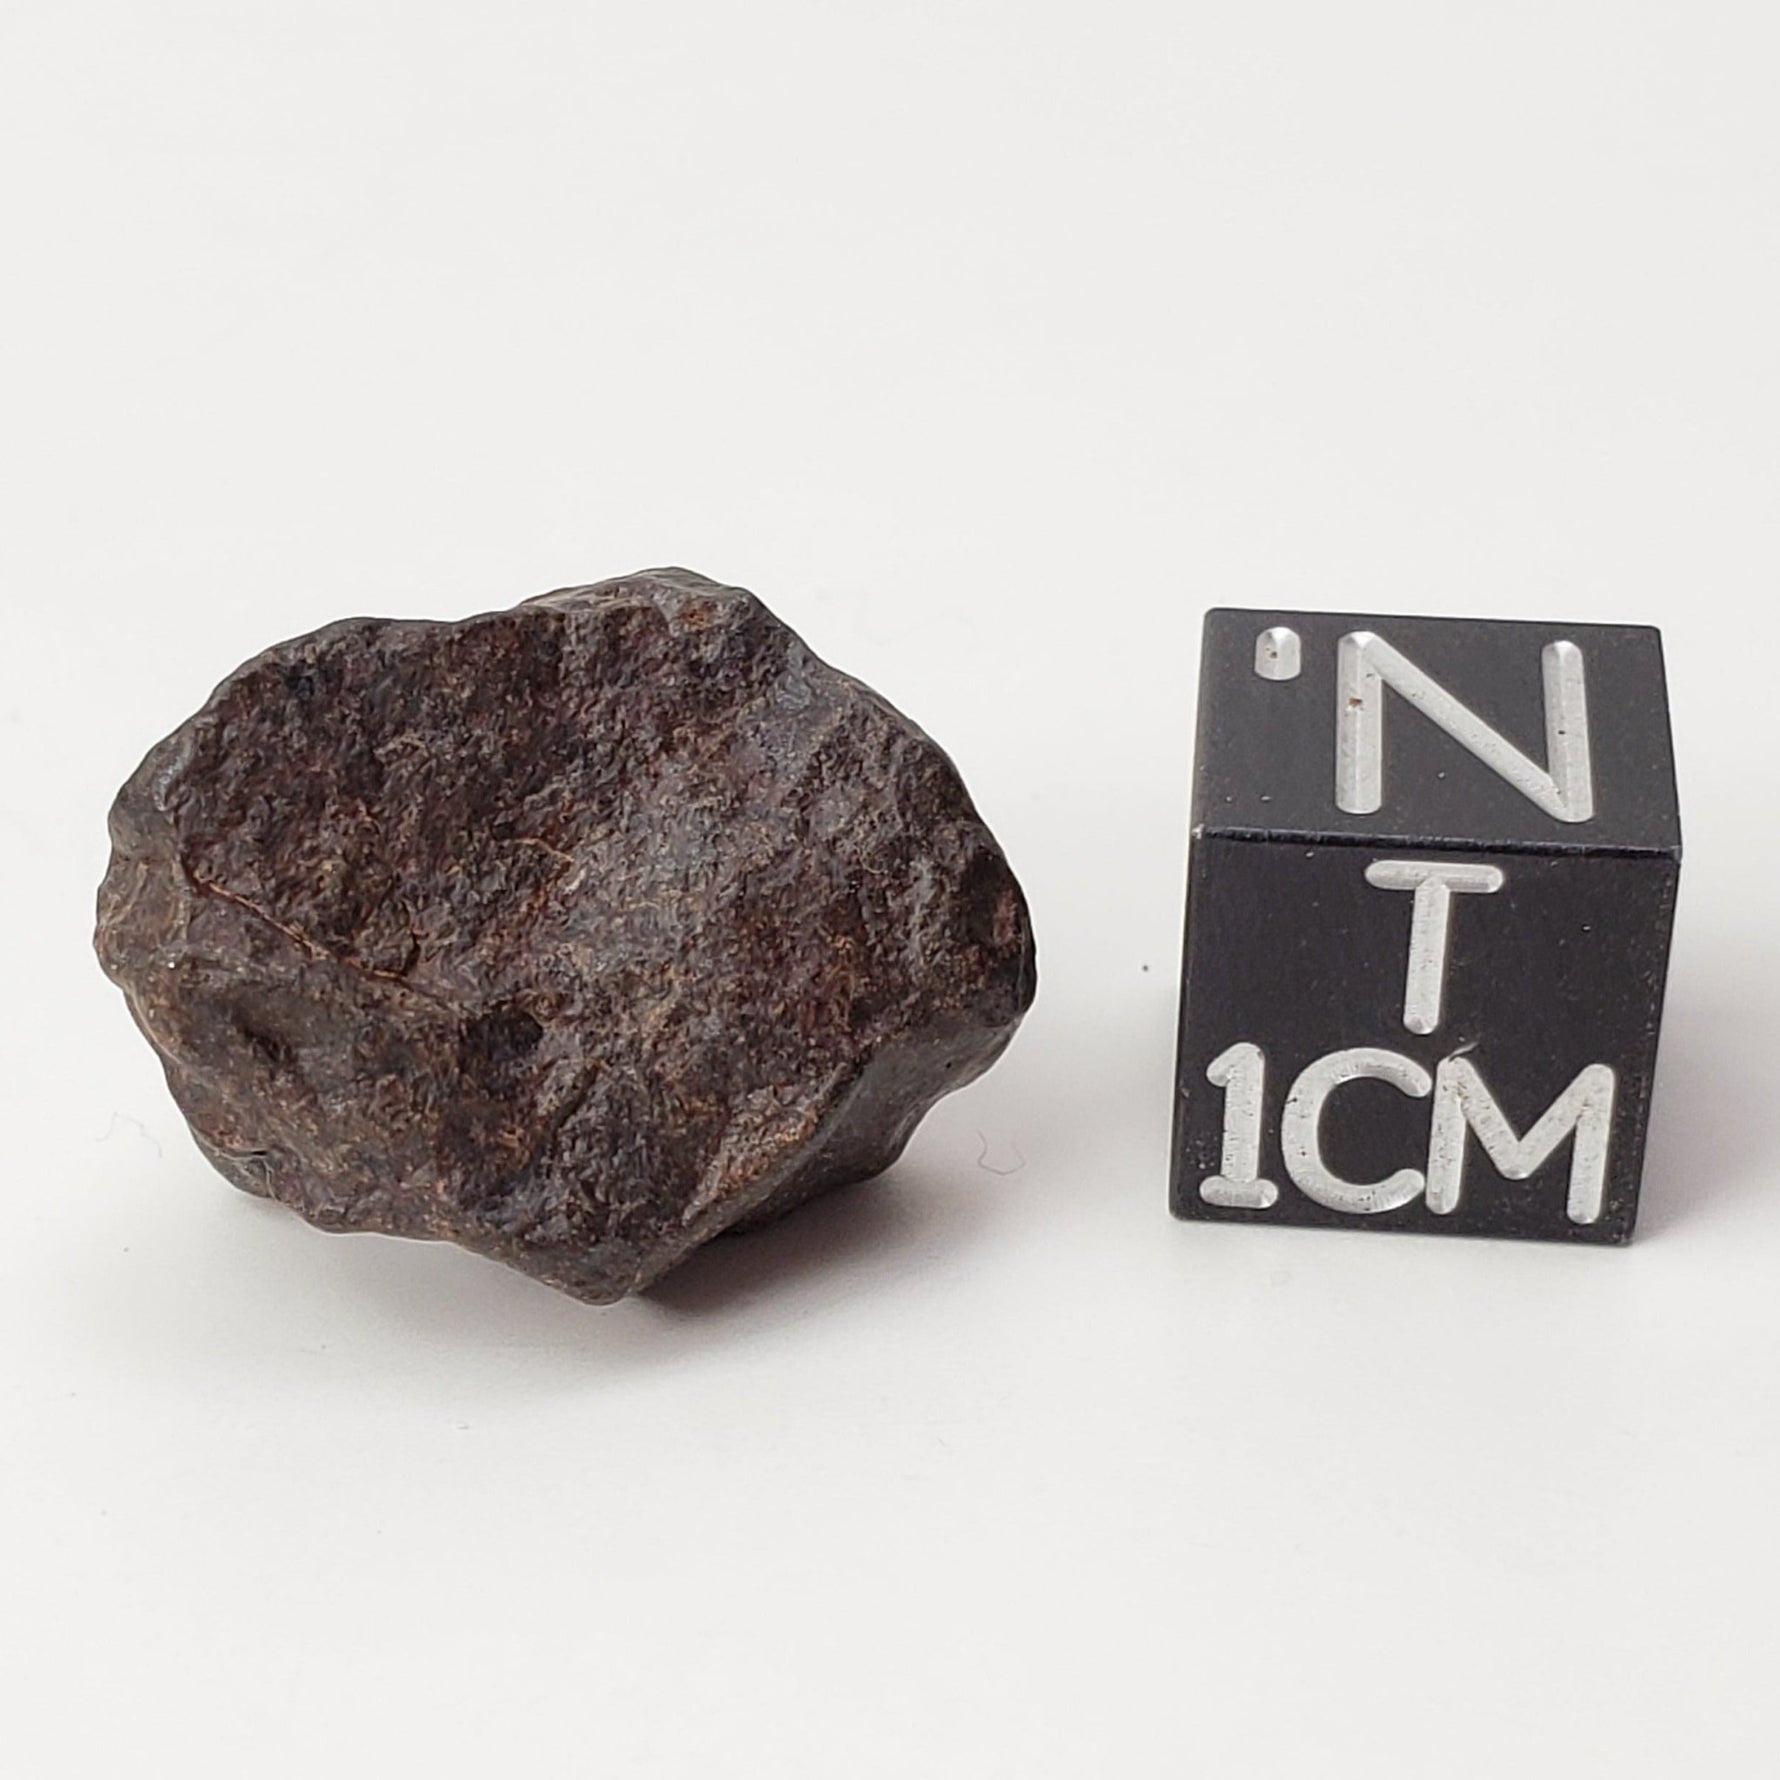 NWA 4293 Meteorite | 4.35 Grams | Individual | H6 Chondrite | SO24